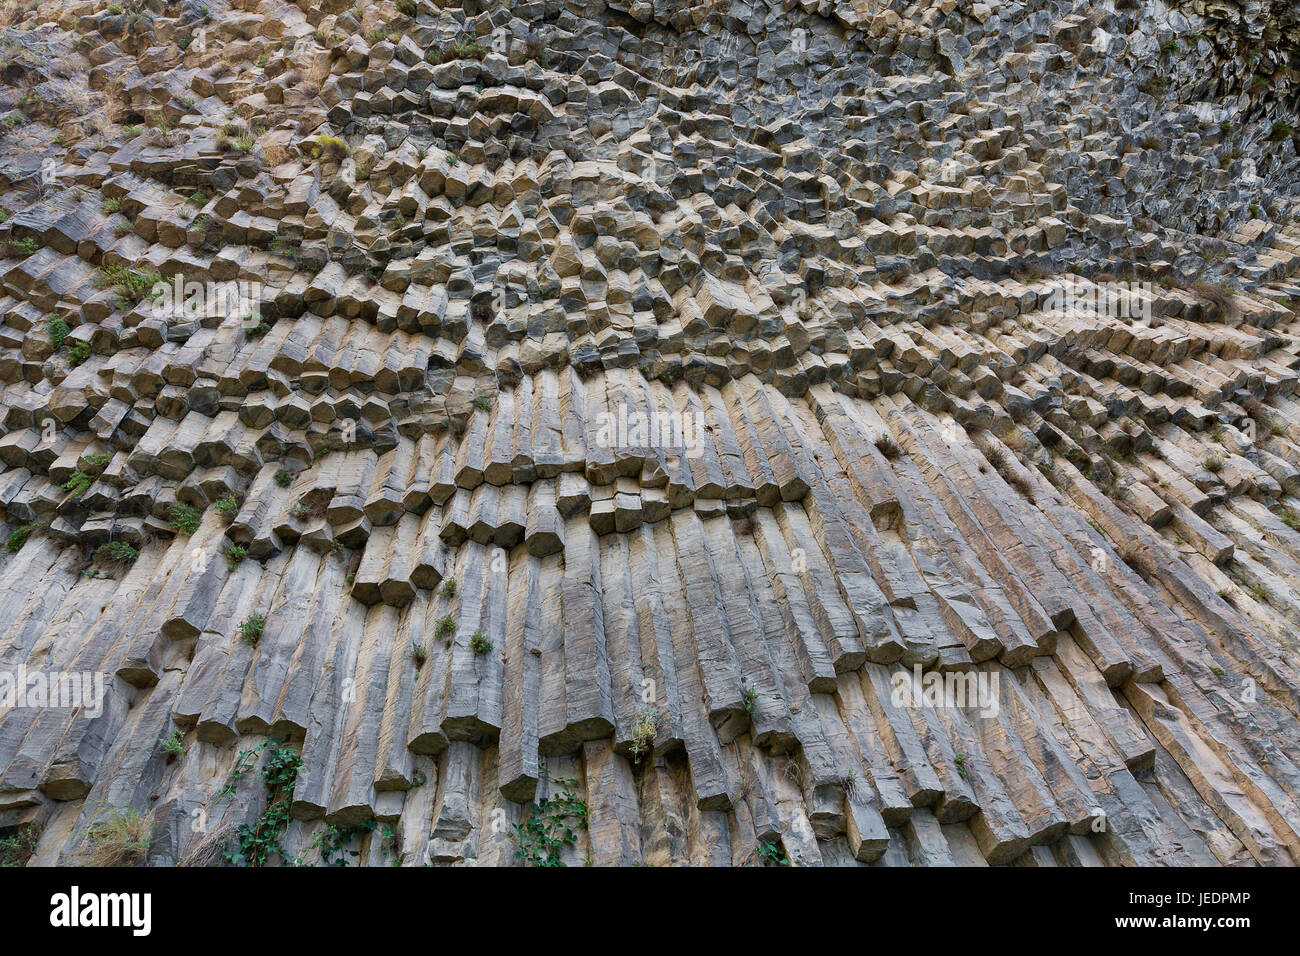 Formaciones de roca basáltica conocida como la Sinfonía de piedras en Armenia. Foto de stock